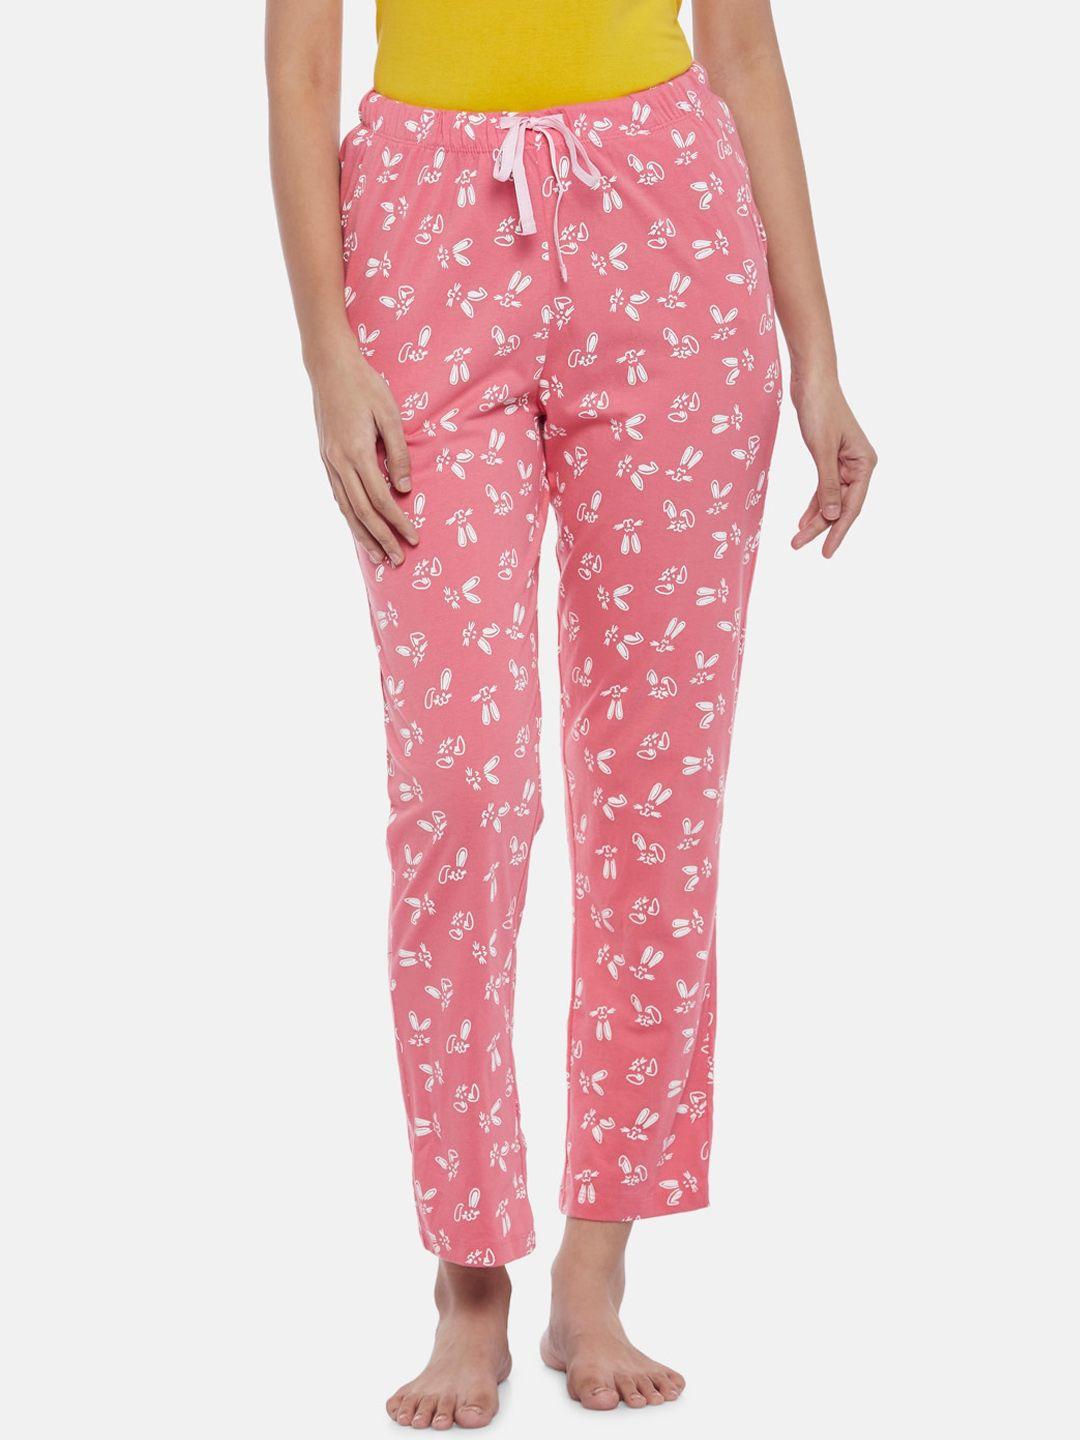 dreamz by pantaloons women coral pink printed cotton lounge pants